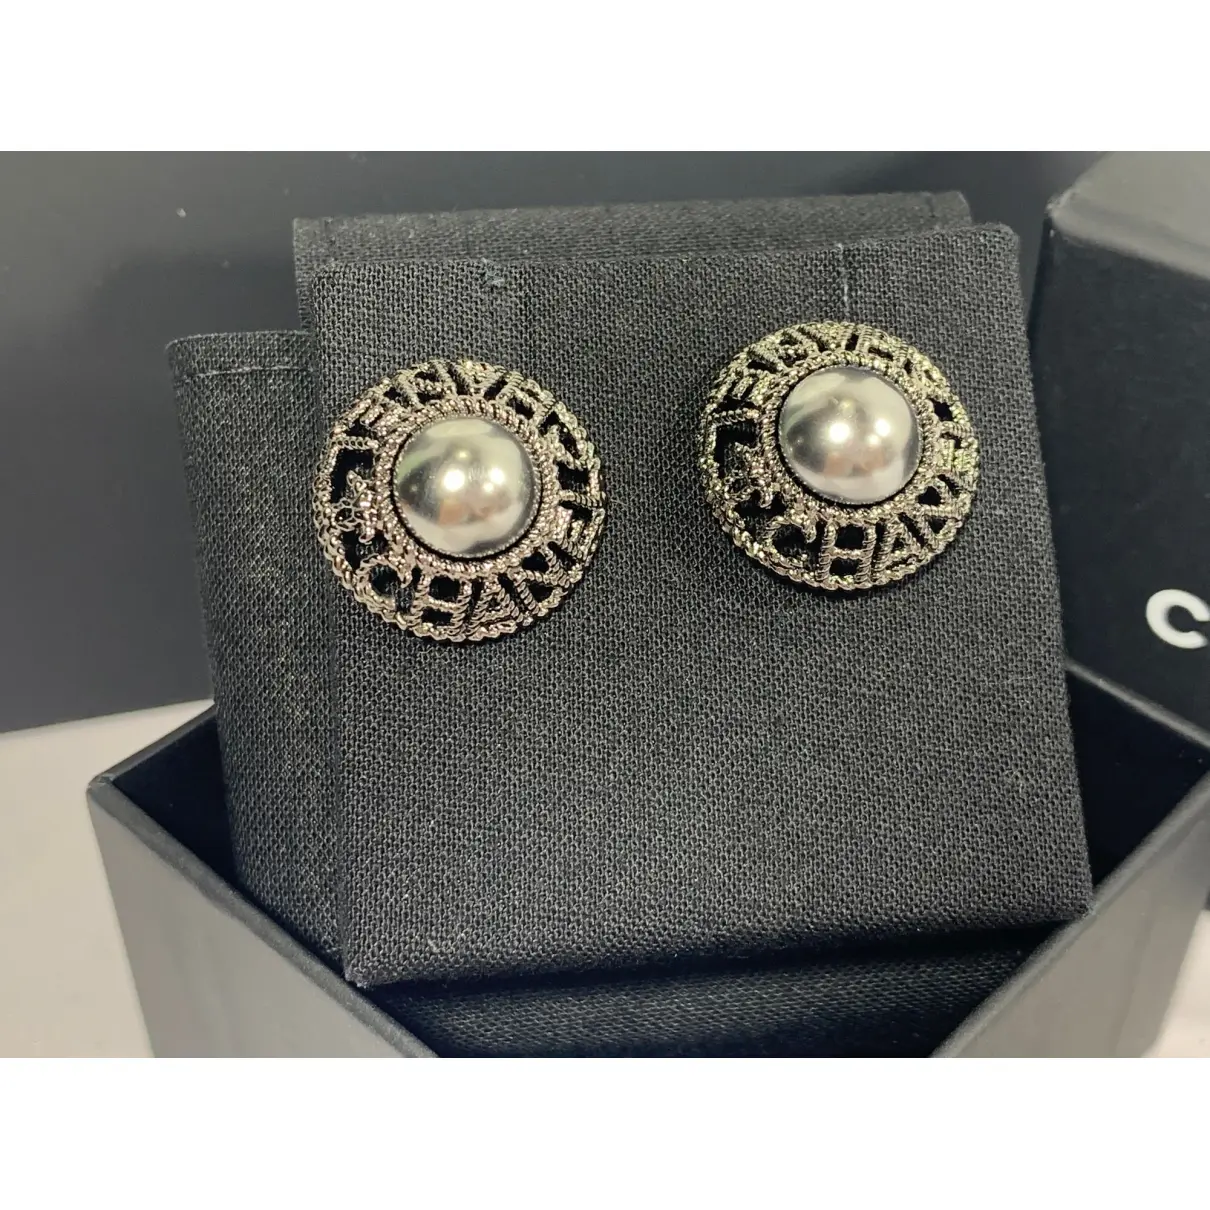 Buy Chanel Pearl earrings online